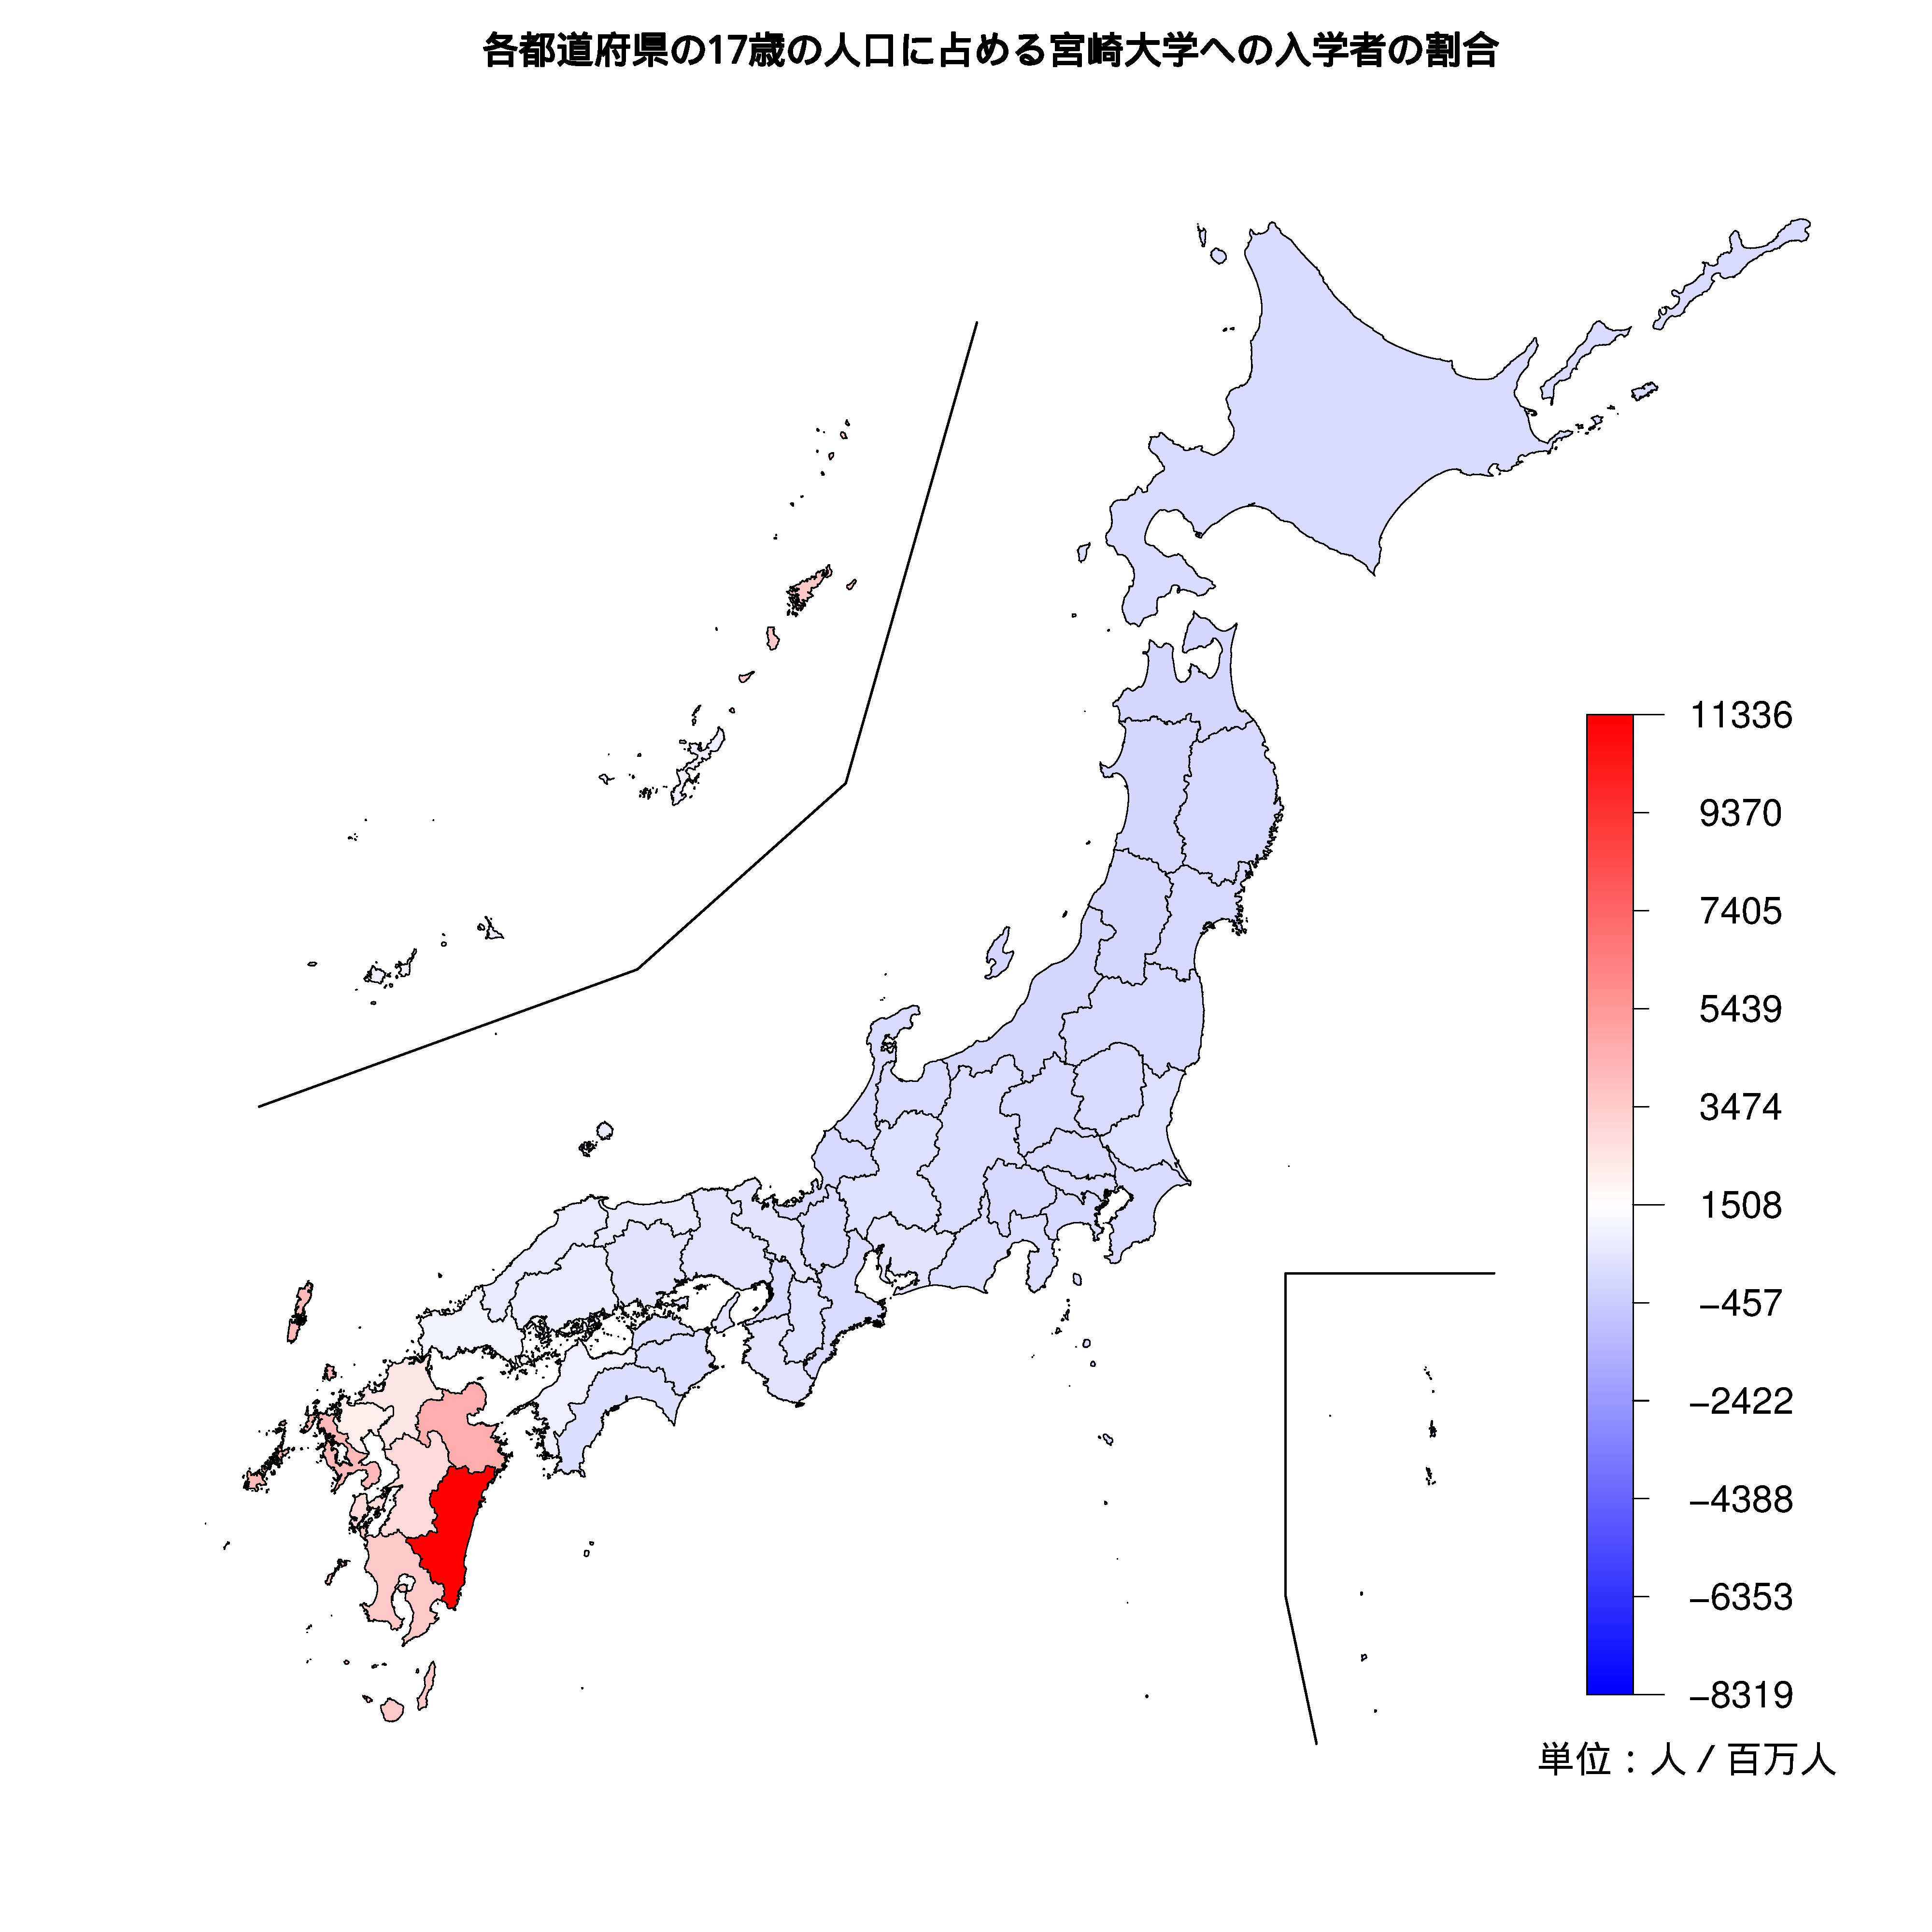 宮崎大学への入学者が多い都道府県の色分け地図